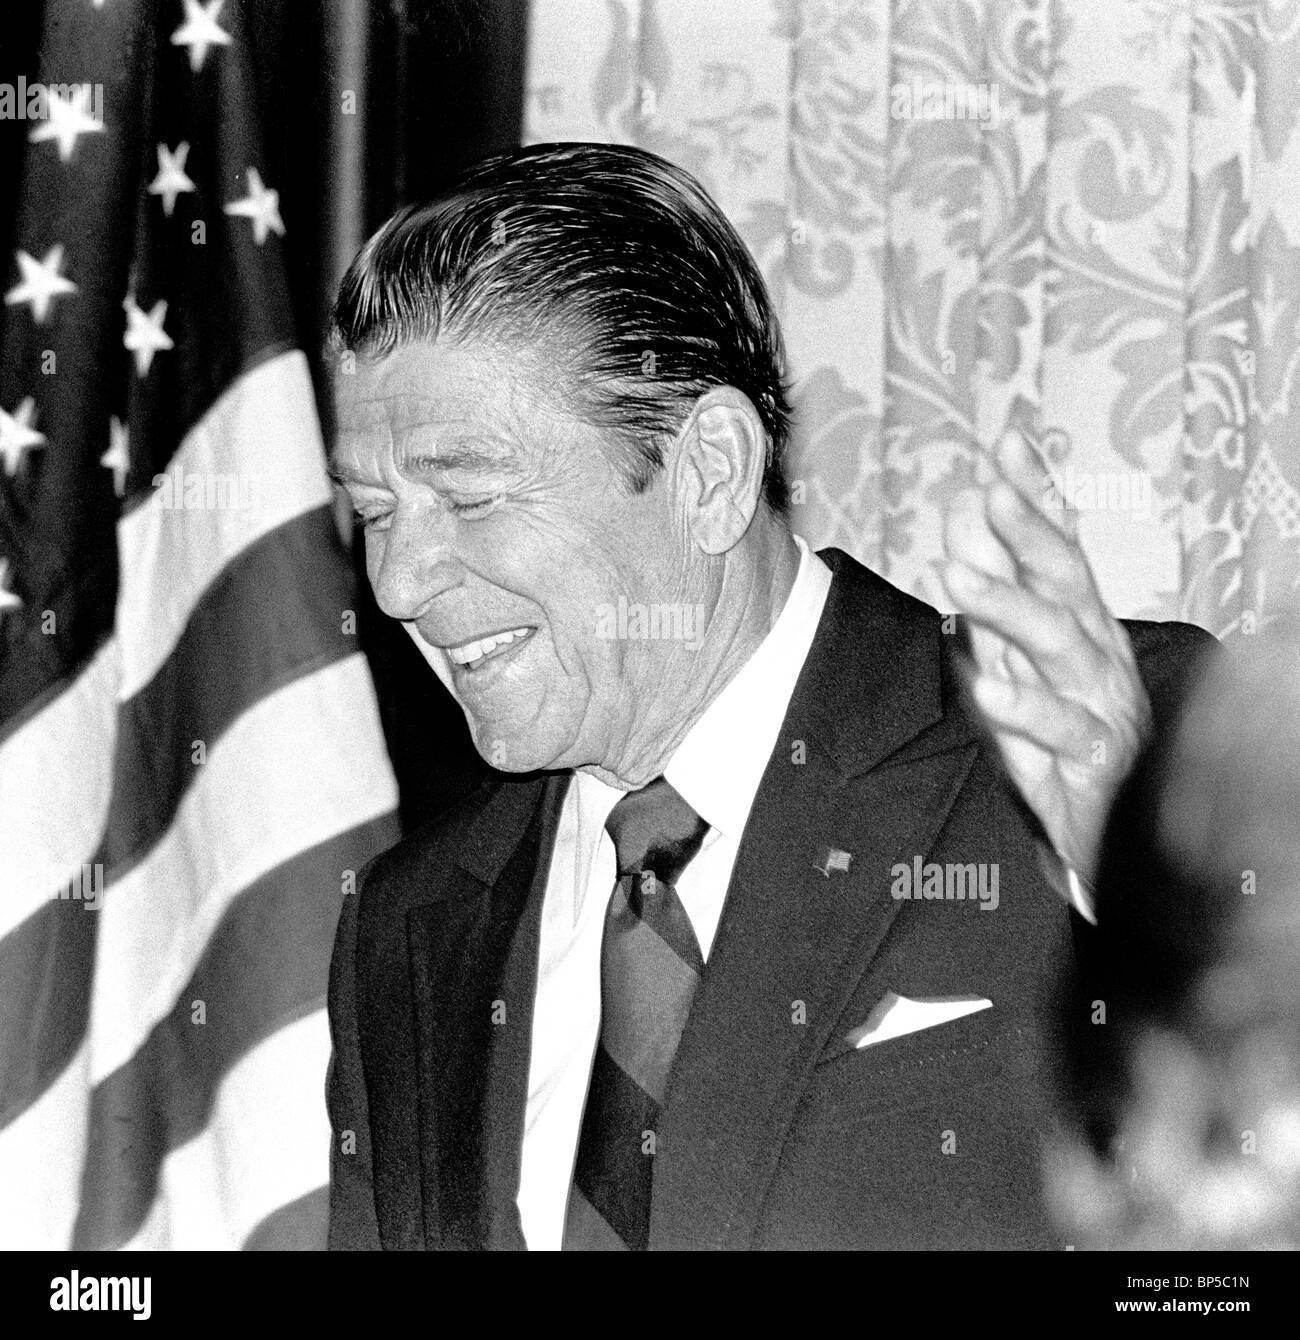 Ronald Reagan se présente à la présidence des États-Unis. Banque D'Images